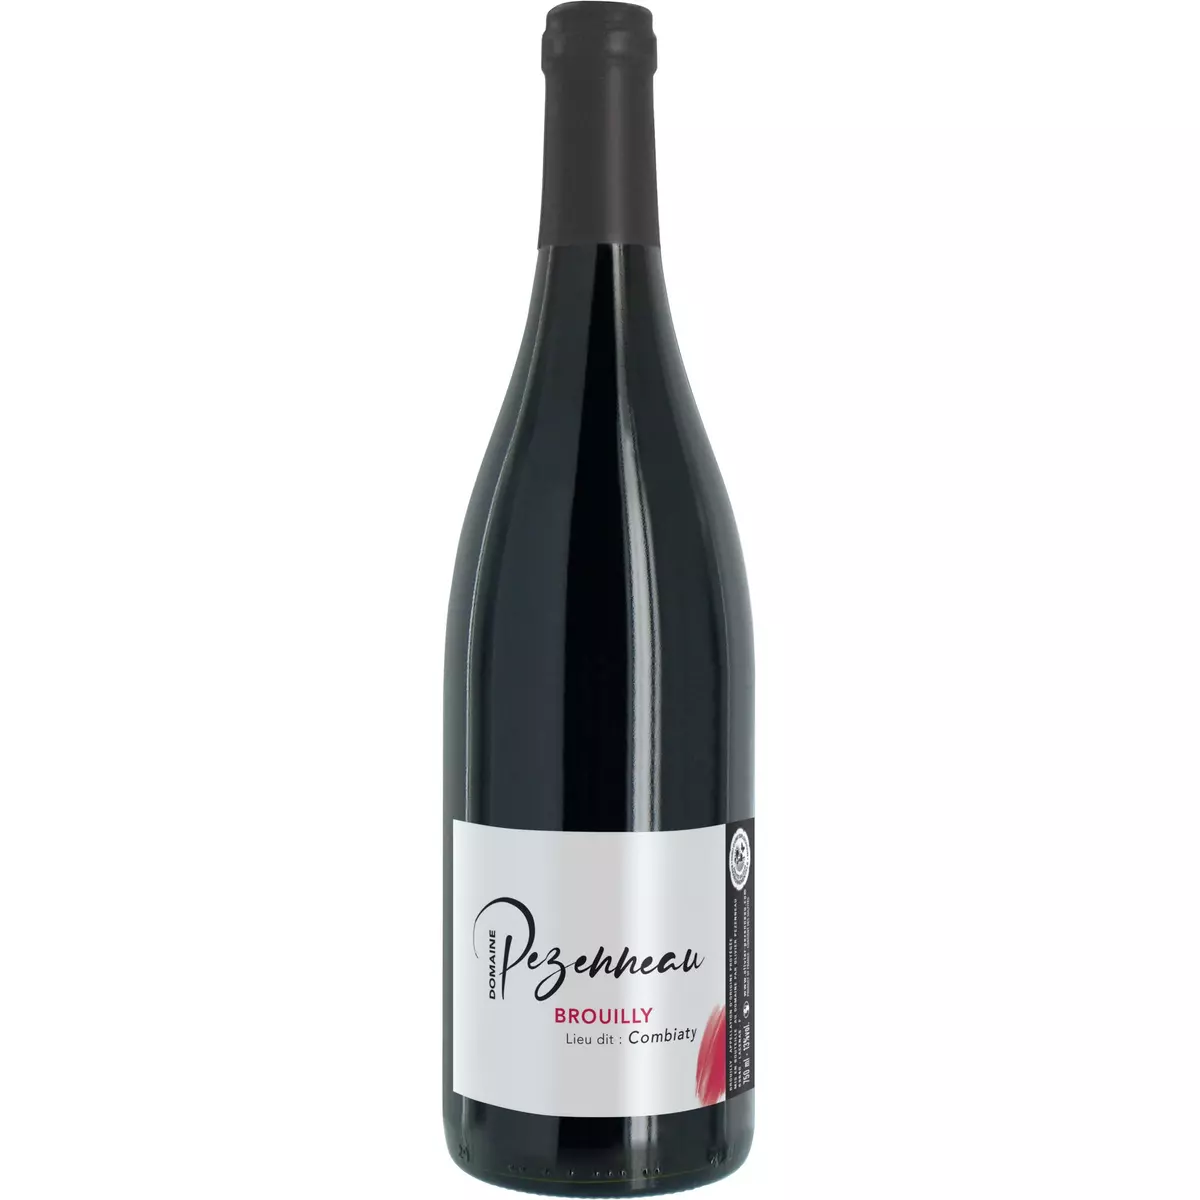 Vin rouge AOP Brouilly Domaine Pezenneau 75cl